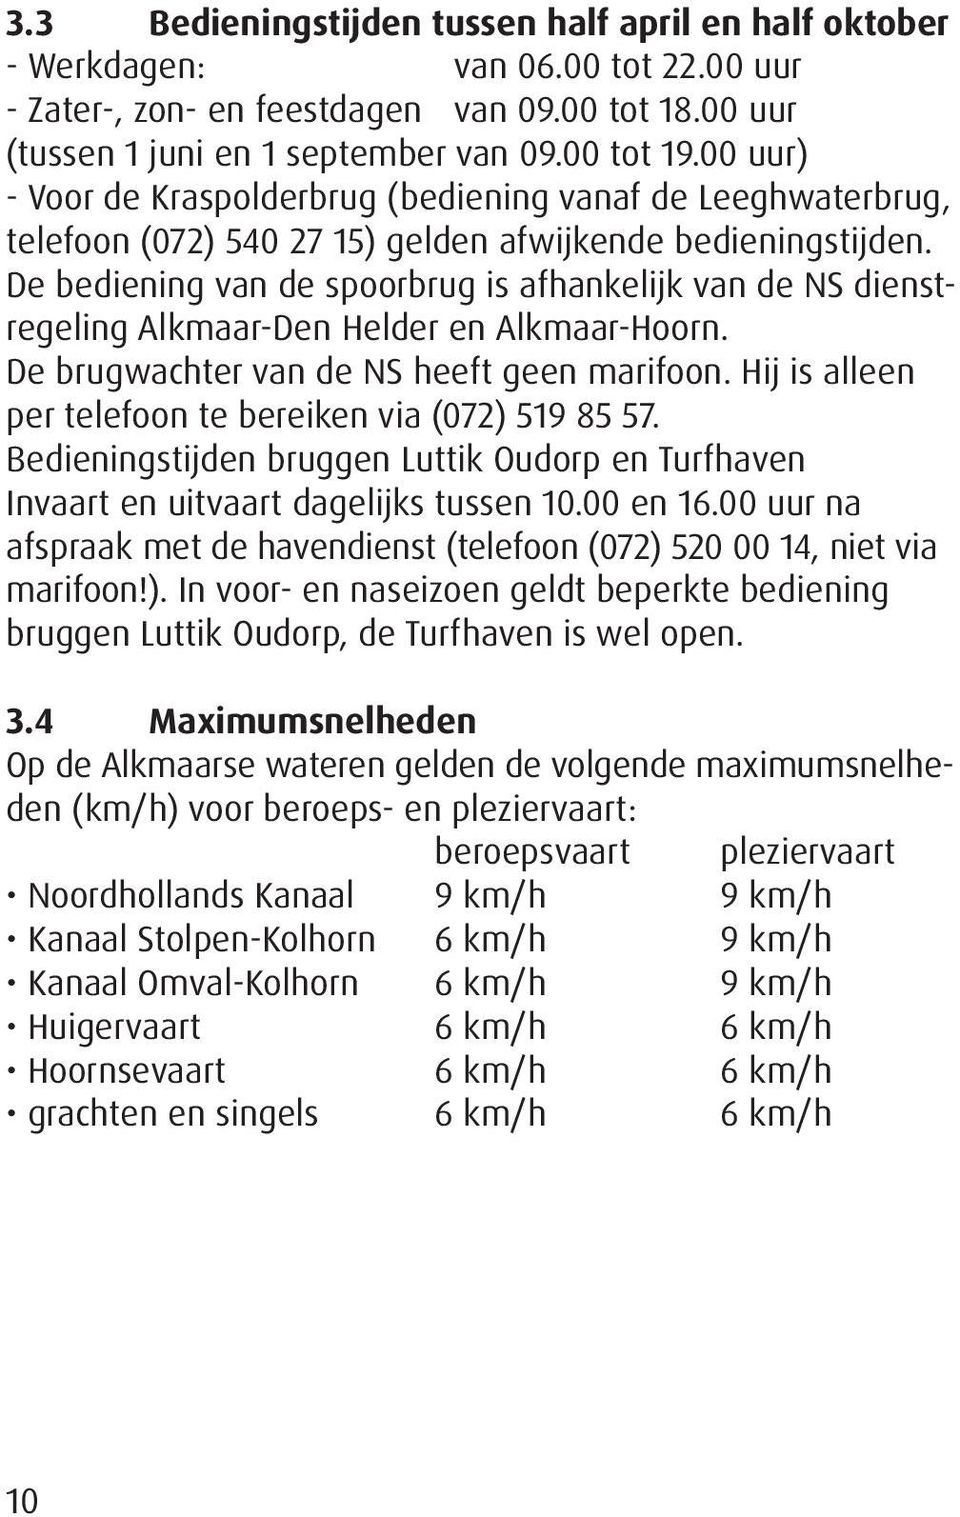 De bediening van de spoorbrug is afhankelijk van de NS dienstregeling Alkmaar-Den Helder en Alkmaar-Hoorn. De brugwachter van de NS heeft geen marifoon.